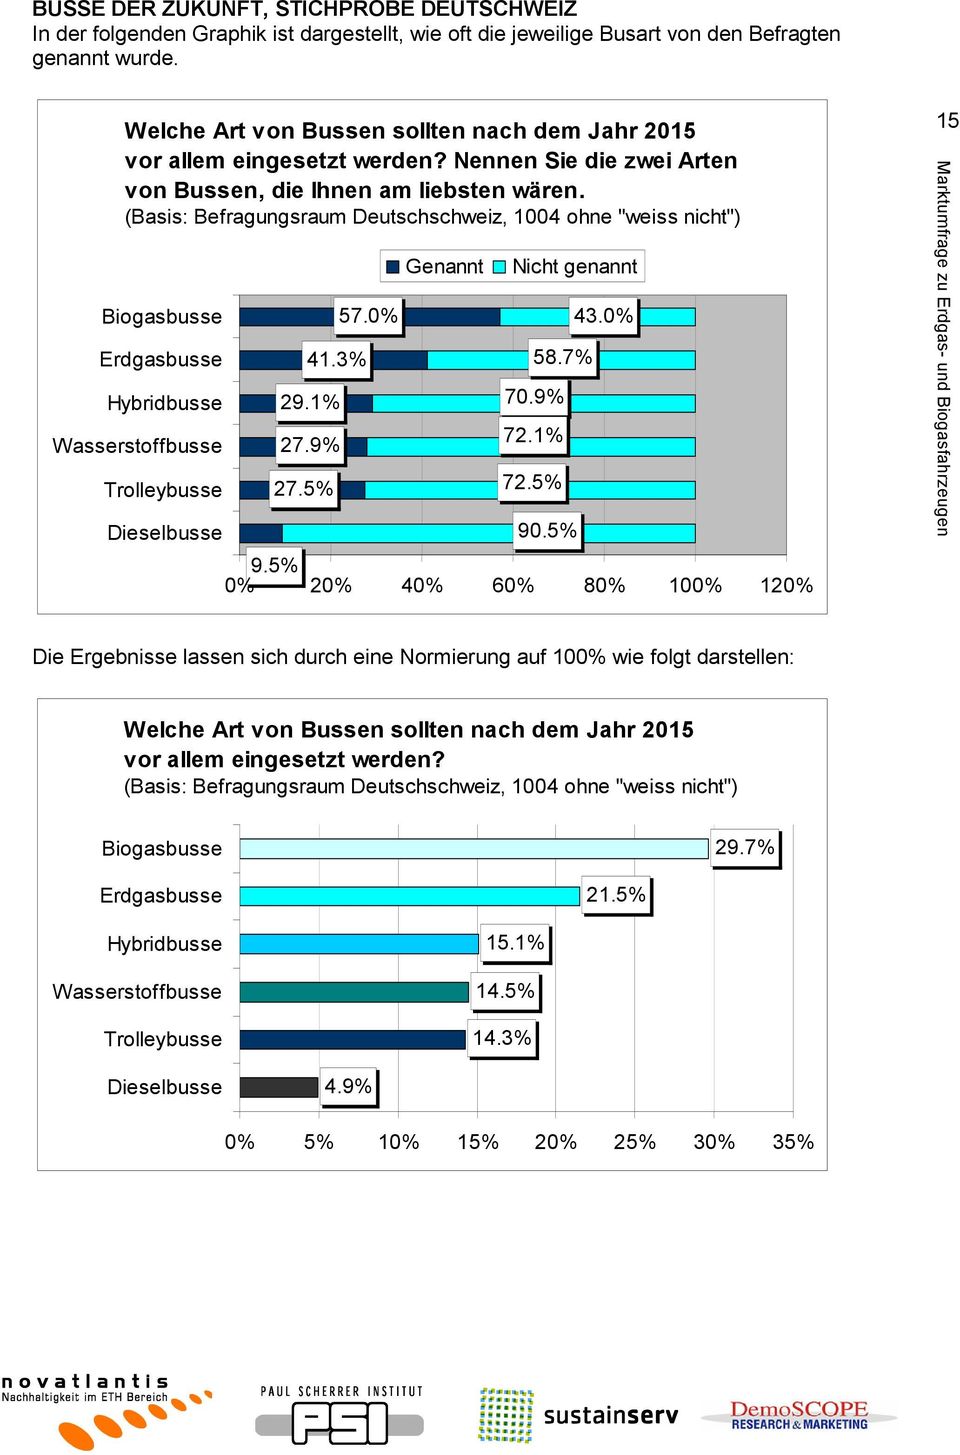 (Basis: Befragungsraum Deutschschweiz, 1004 ohne "weiss nicht") Biogasbusse Erdgasbusse Hybridbusse Wasserstoffbusse Trolleybusse Dieselbusse 41.3% 29.1% 27.9% 27.5% 57.0% Genannt Nicht genannt 58.